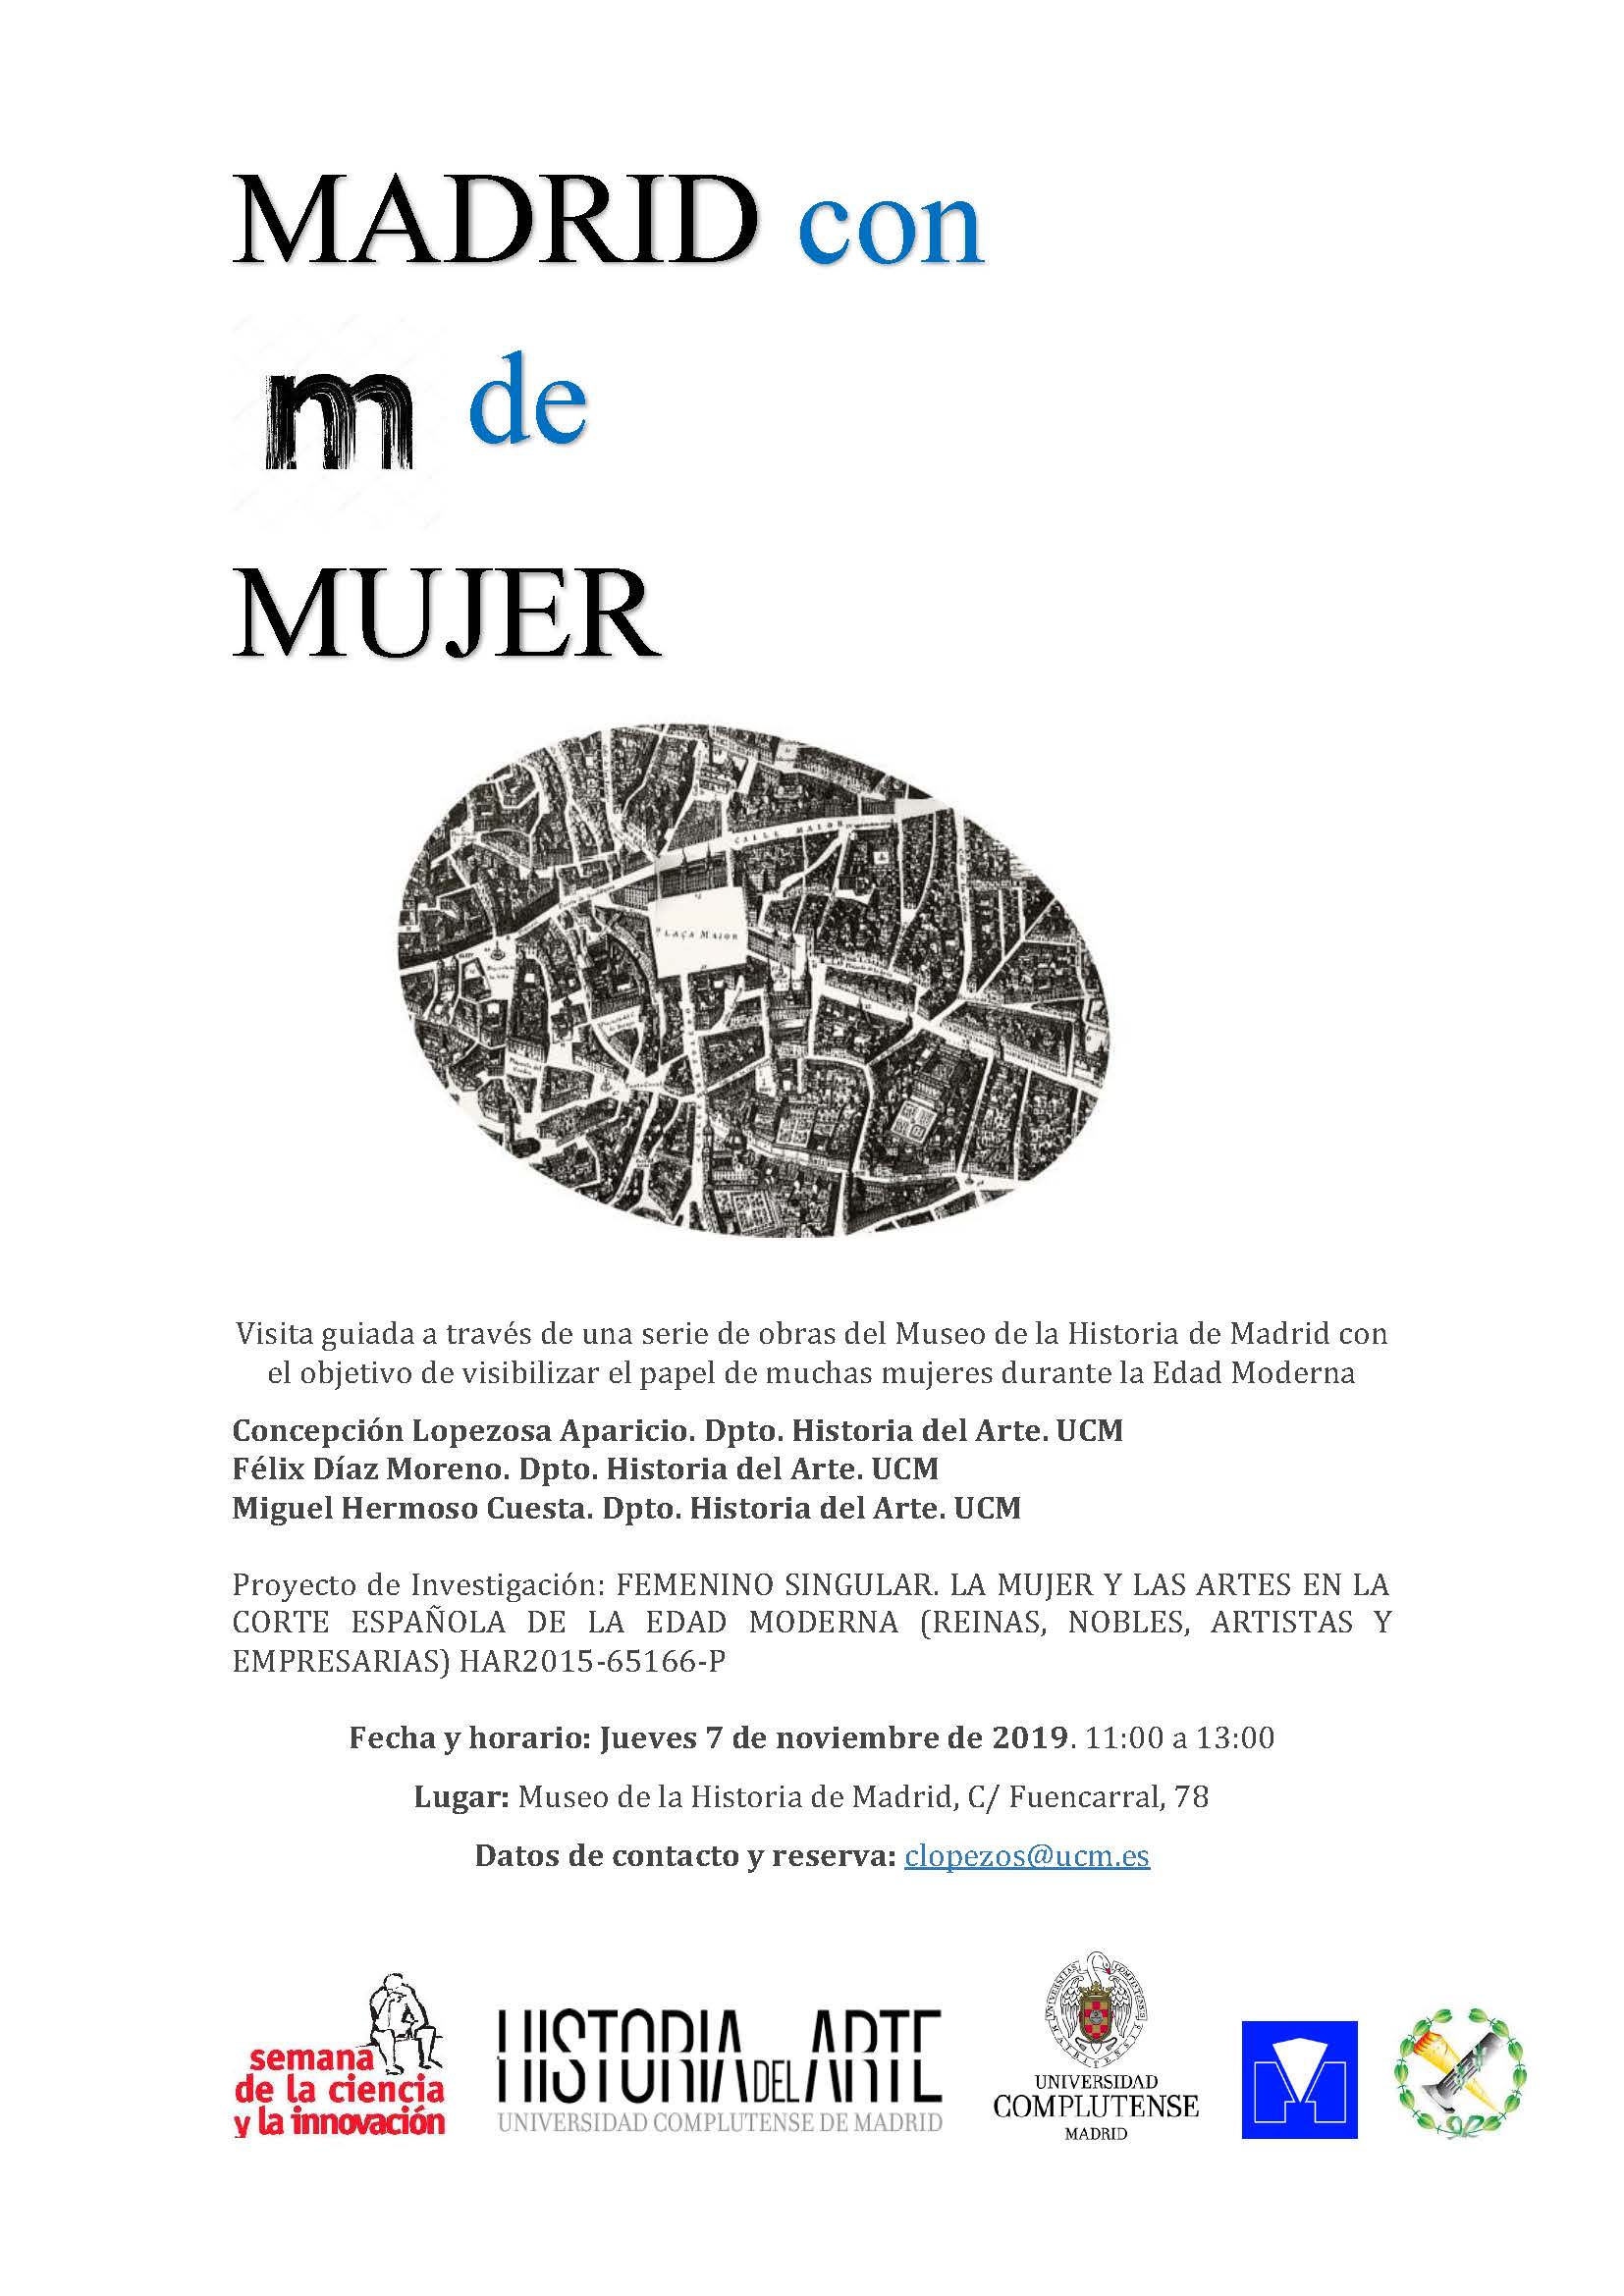 Madrid como M de Mujer. Museo de la Historia de Madrid. 7 de noviembre. 11:00 h.